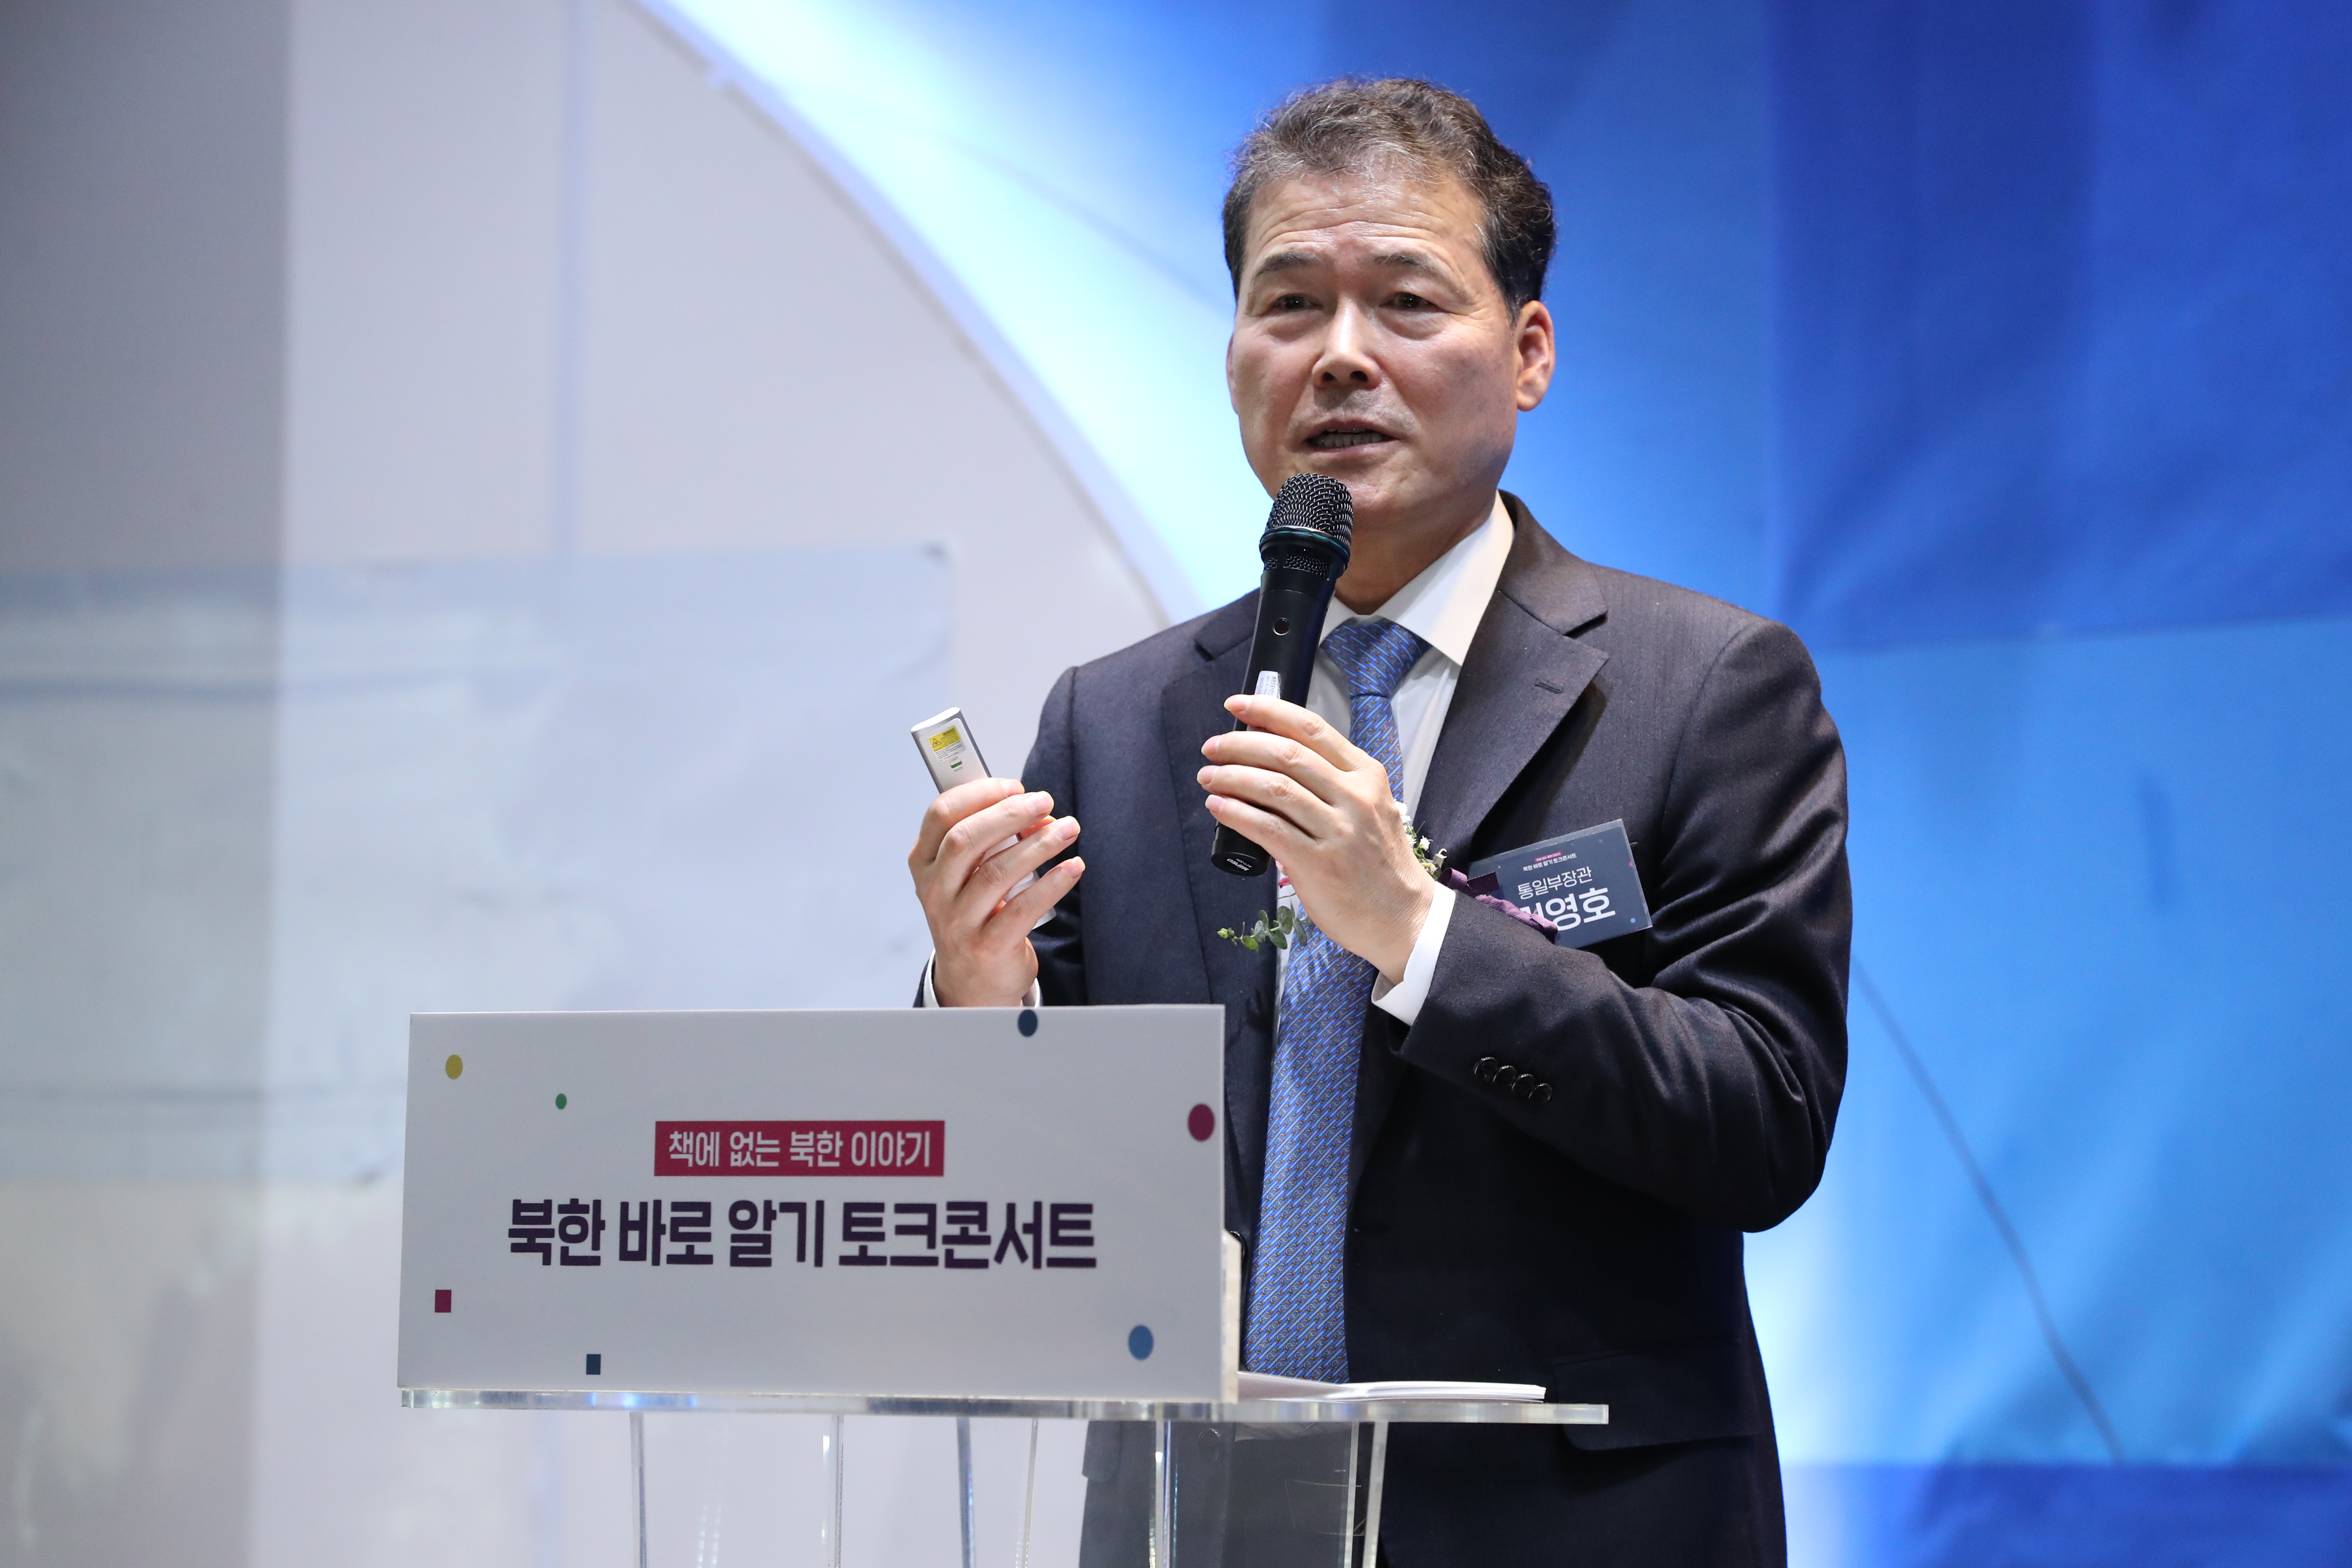 240203 (보도자료) 통일부장관  찾아가는 북(北)스토리 토크콘서트 개최 사진-2.jpg 图片